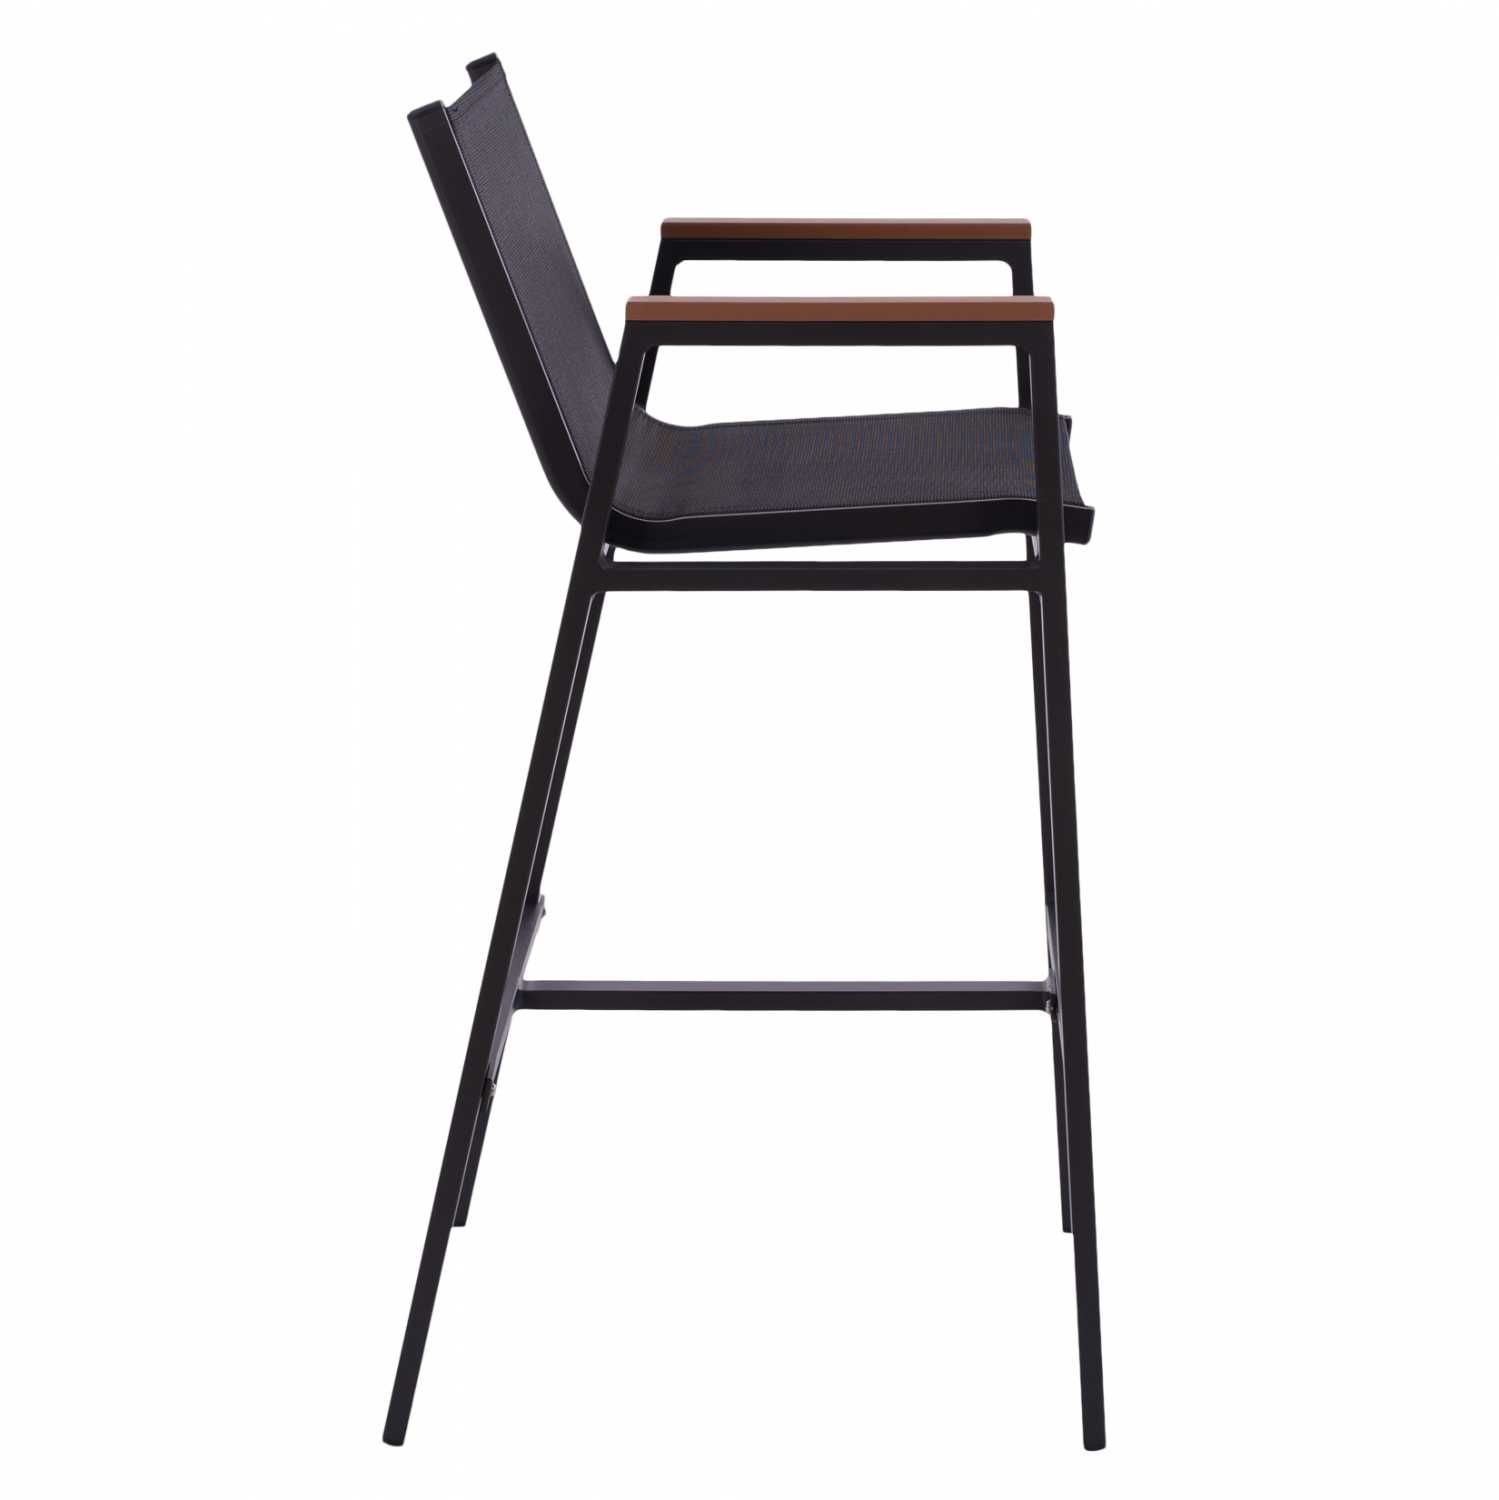 Модерен, алуминиев бар стол с полиууд - HM5790.02, наличен в два цвята